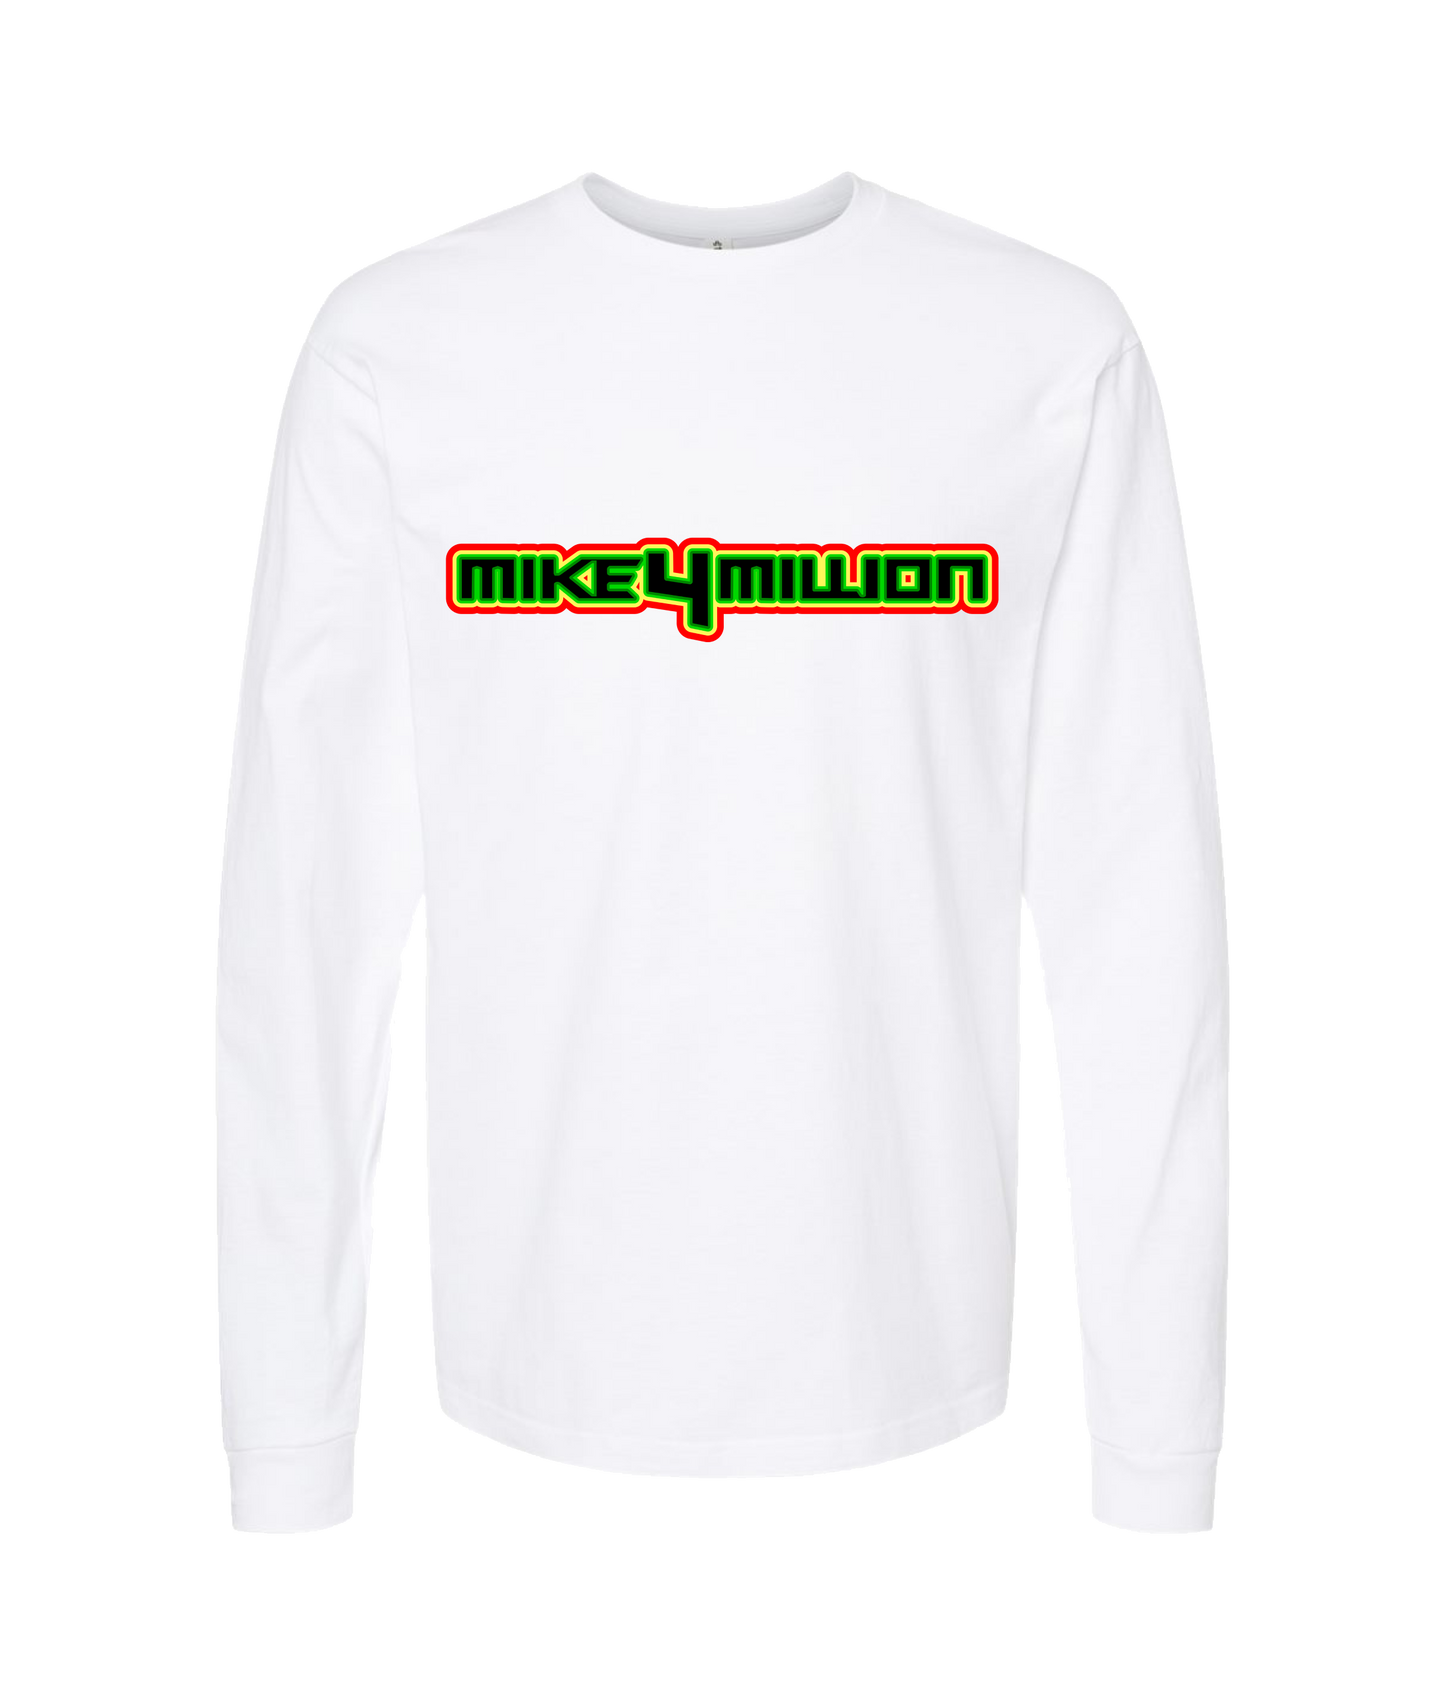 Mike4Million - DESIGN 1 - White Long Sleeve T